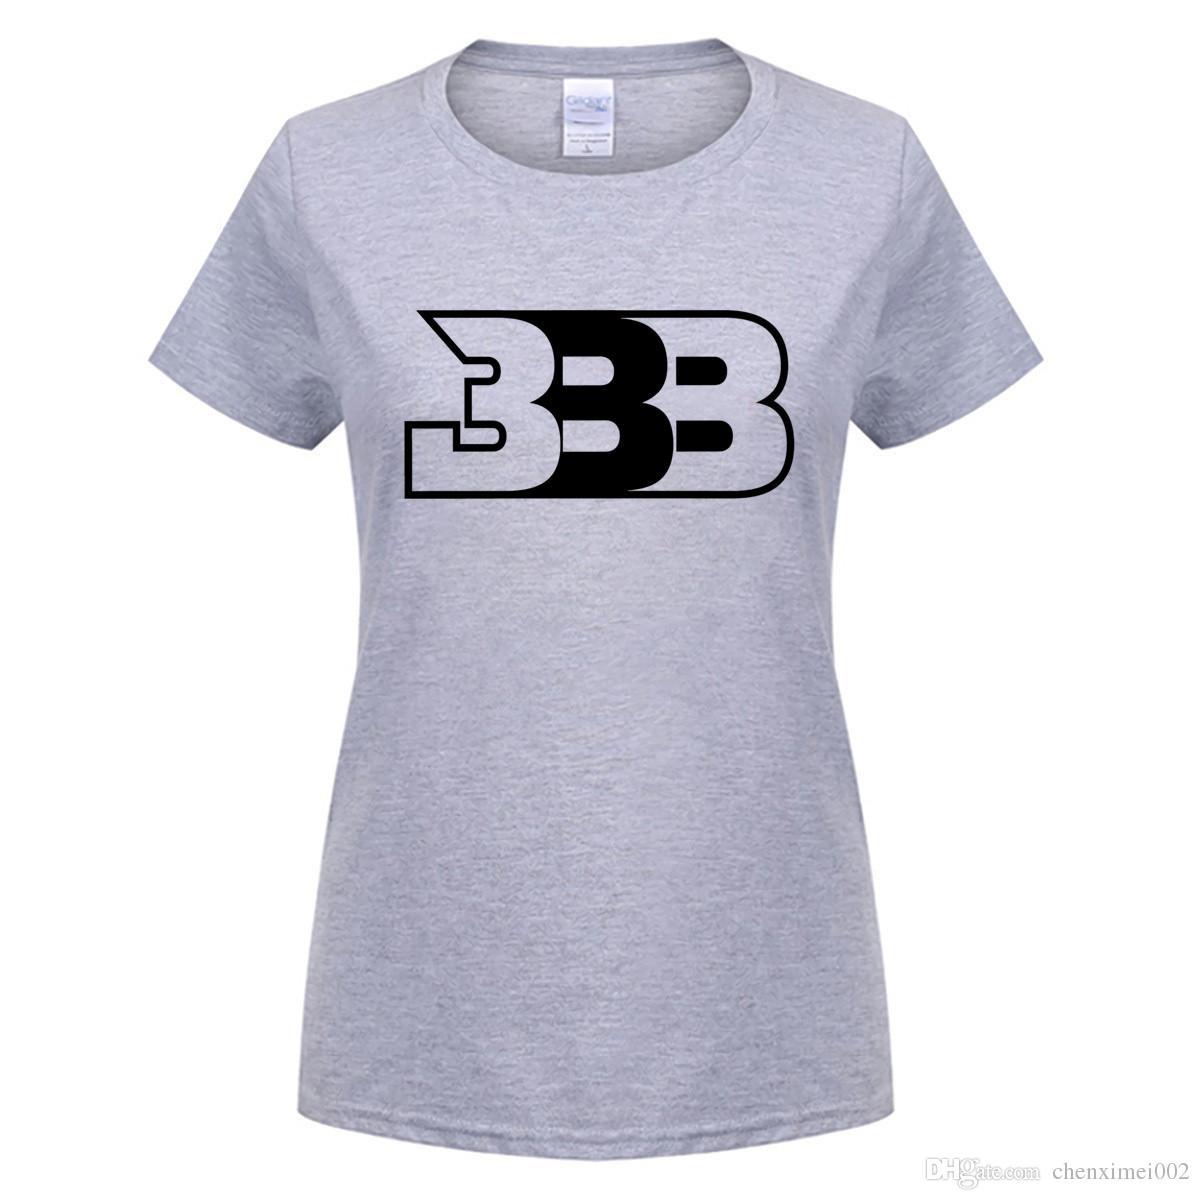 Big Baller Logo - B B B Logo T Shirt Big Baller Brand T Shirt For Women T Shirt ...